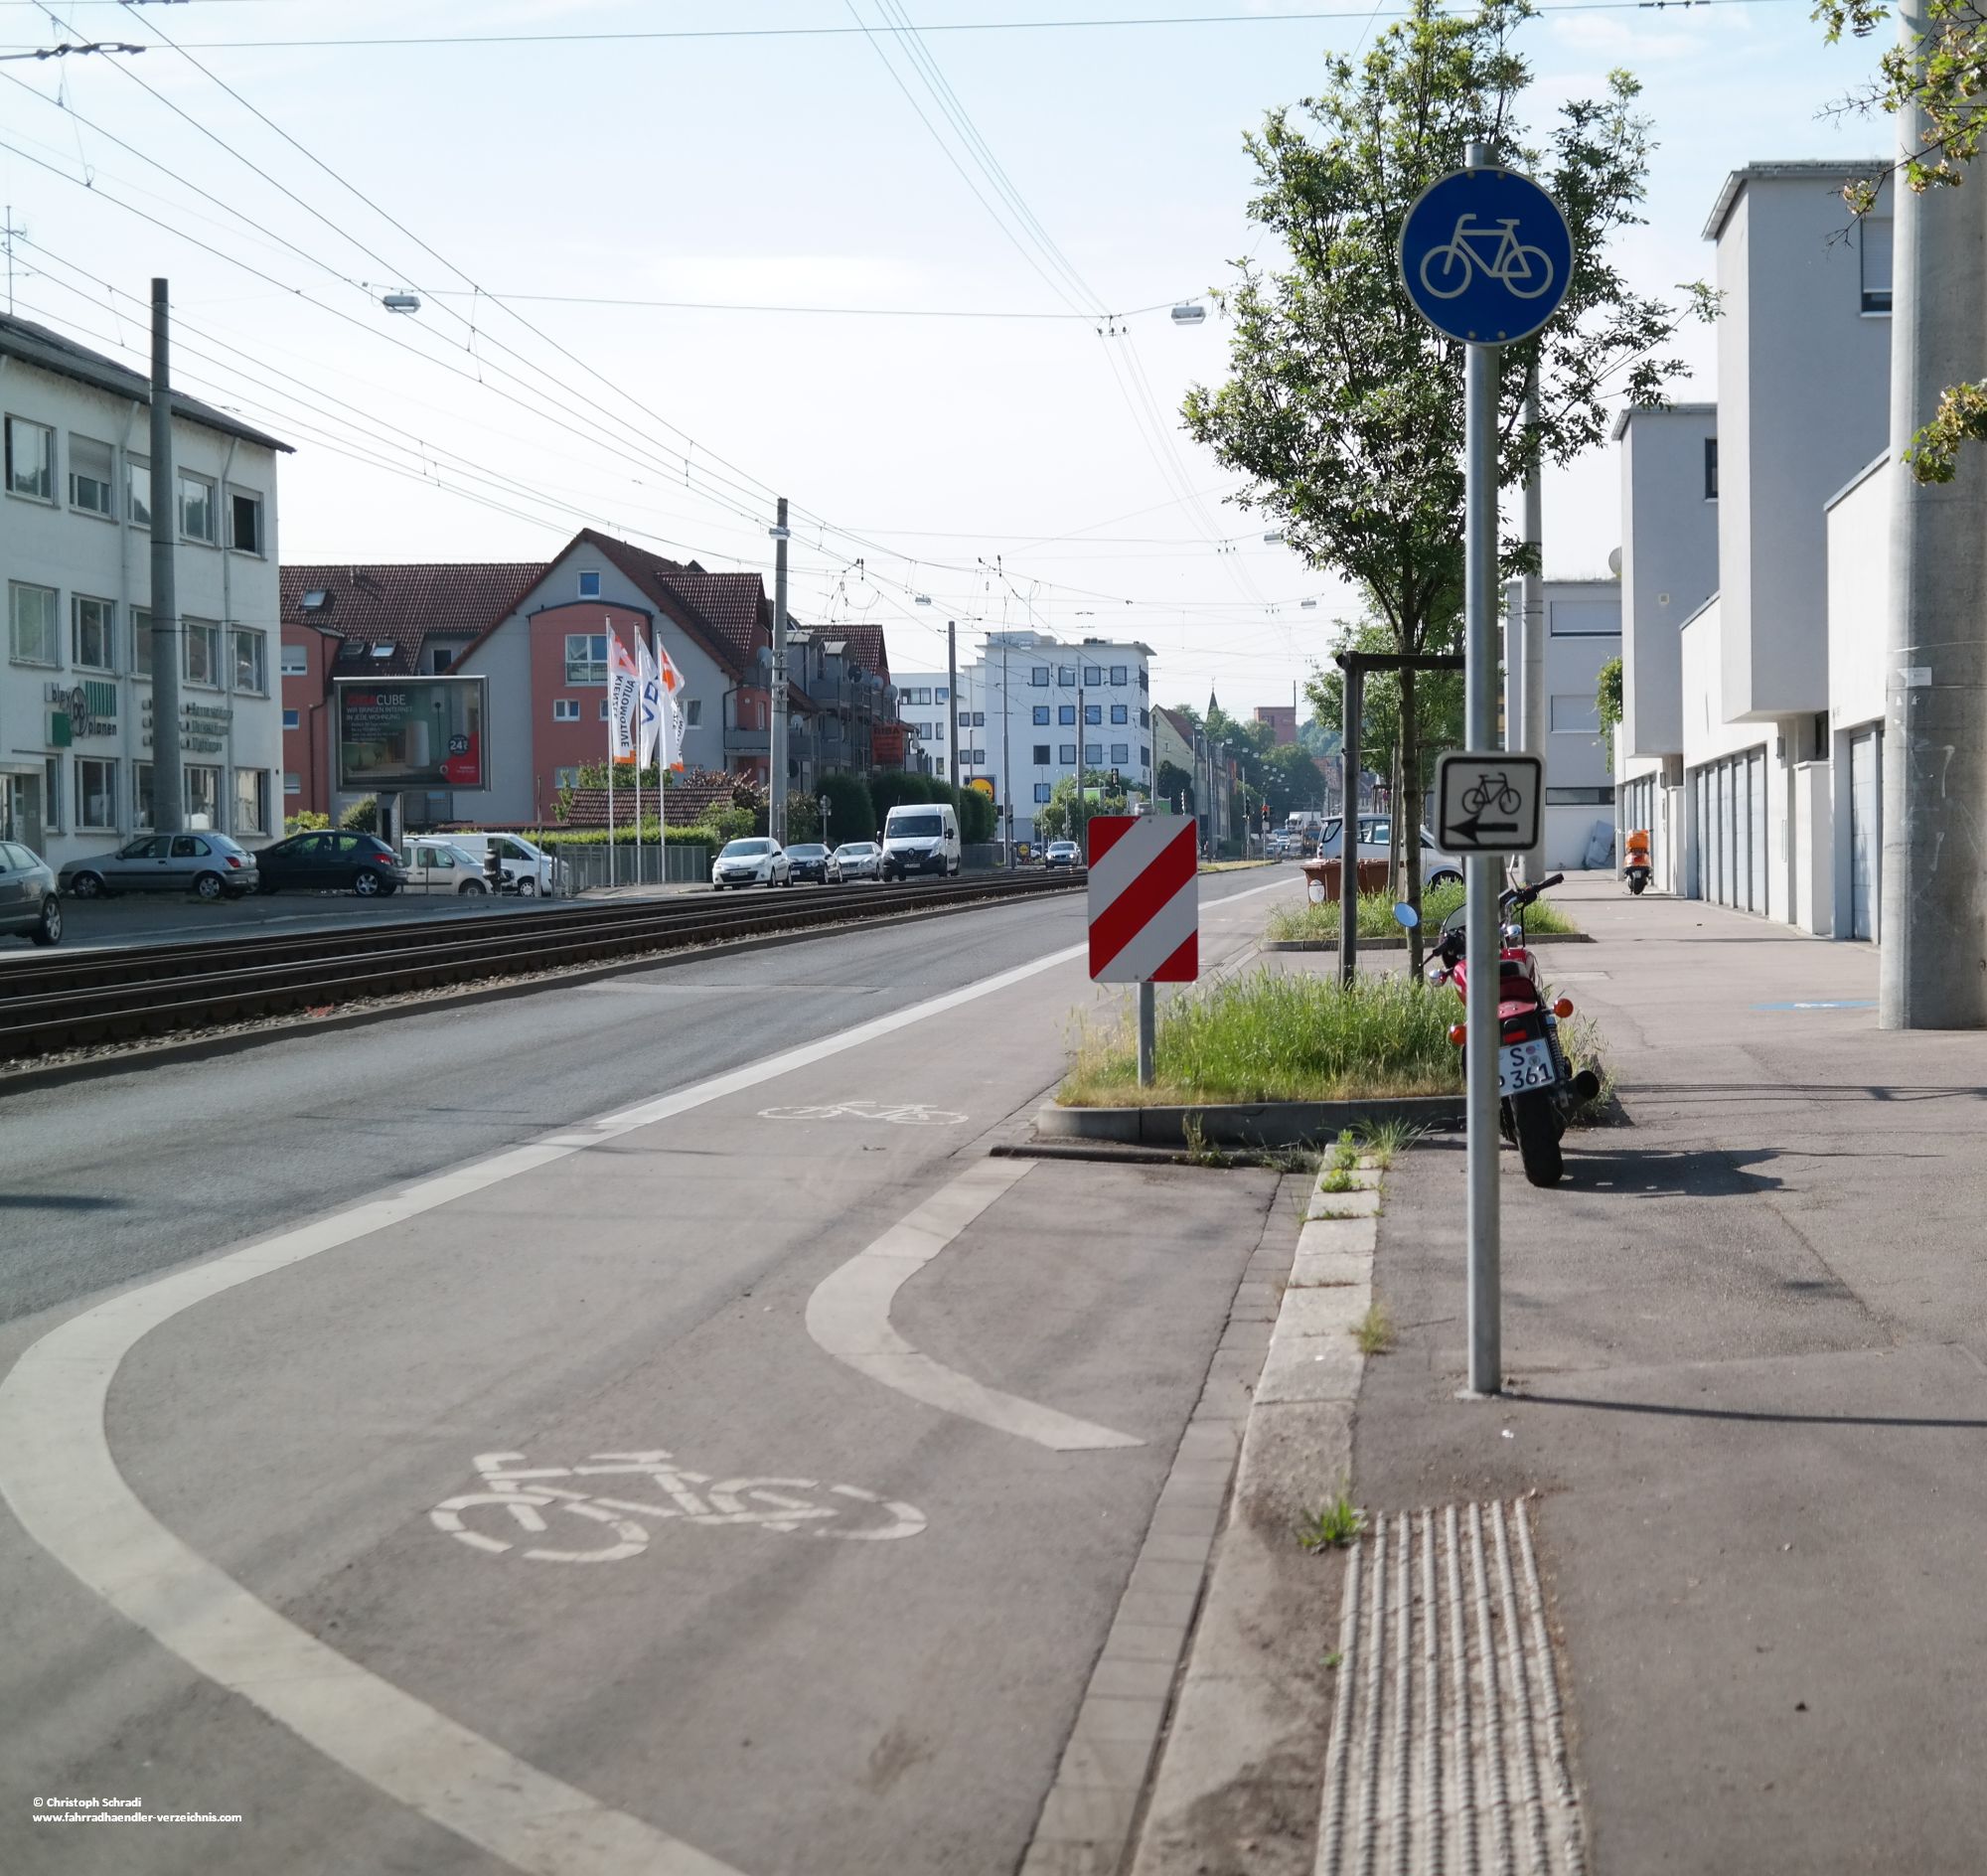 Fahrradwege sind speziell für Fahrräder konzipiert und meist baulich von Autostraßen getrennt